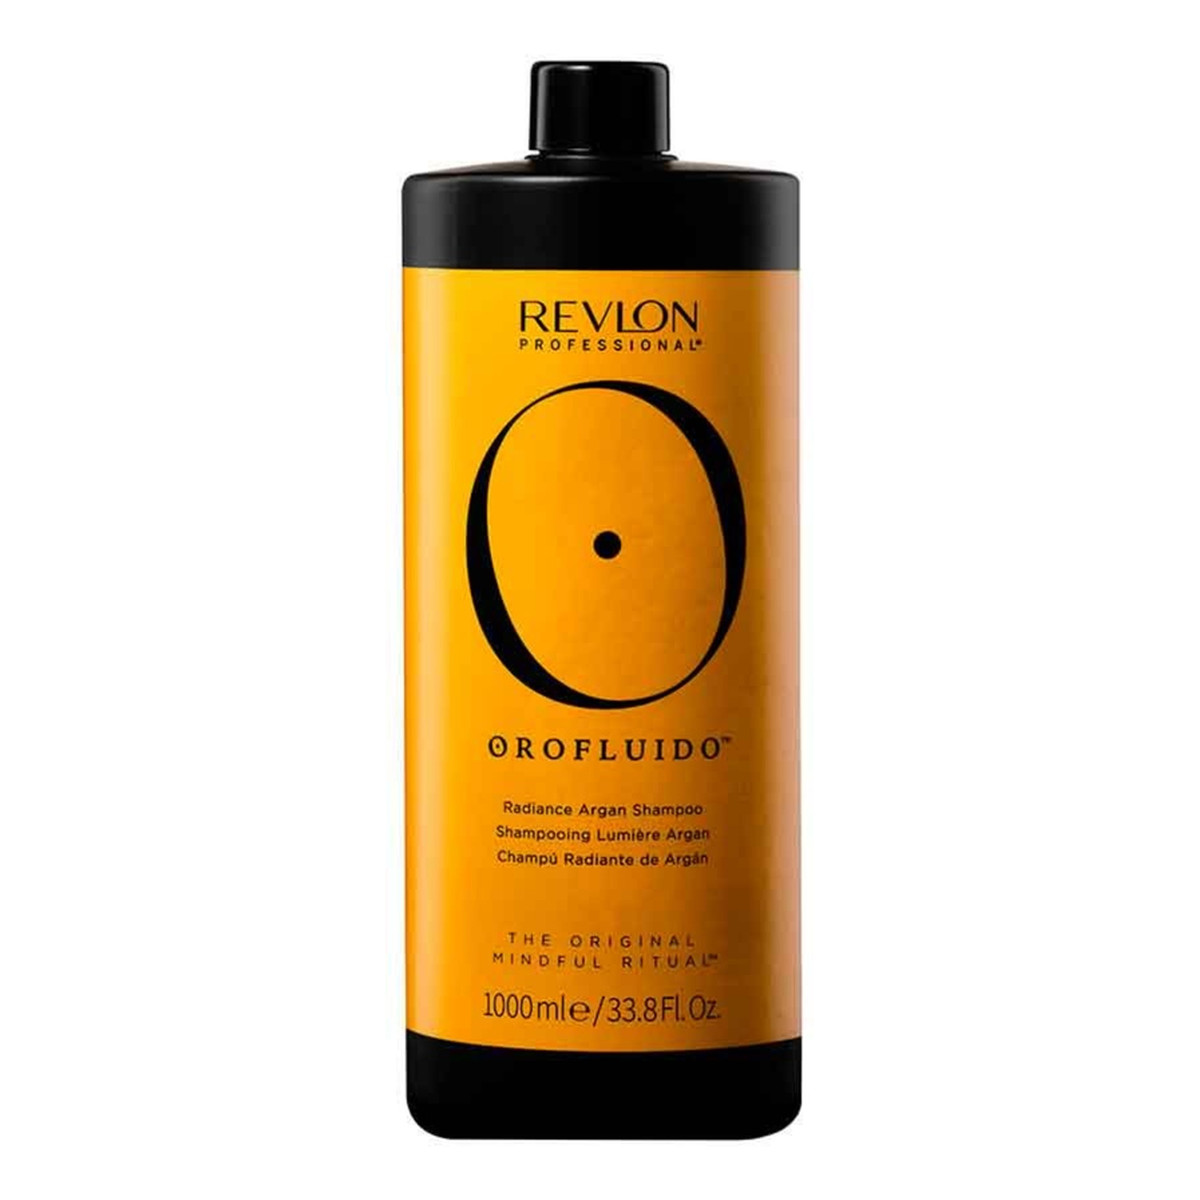 Revlon Orofluido Radiance Argan Shampoo szampon do włosów z olejkiem arganowym 1000ml